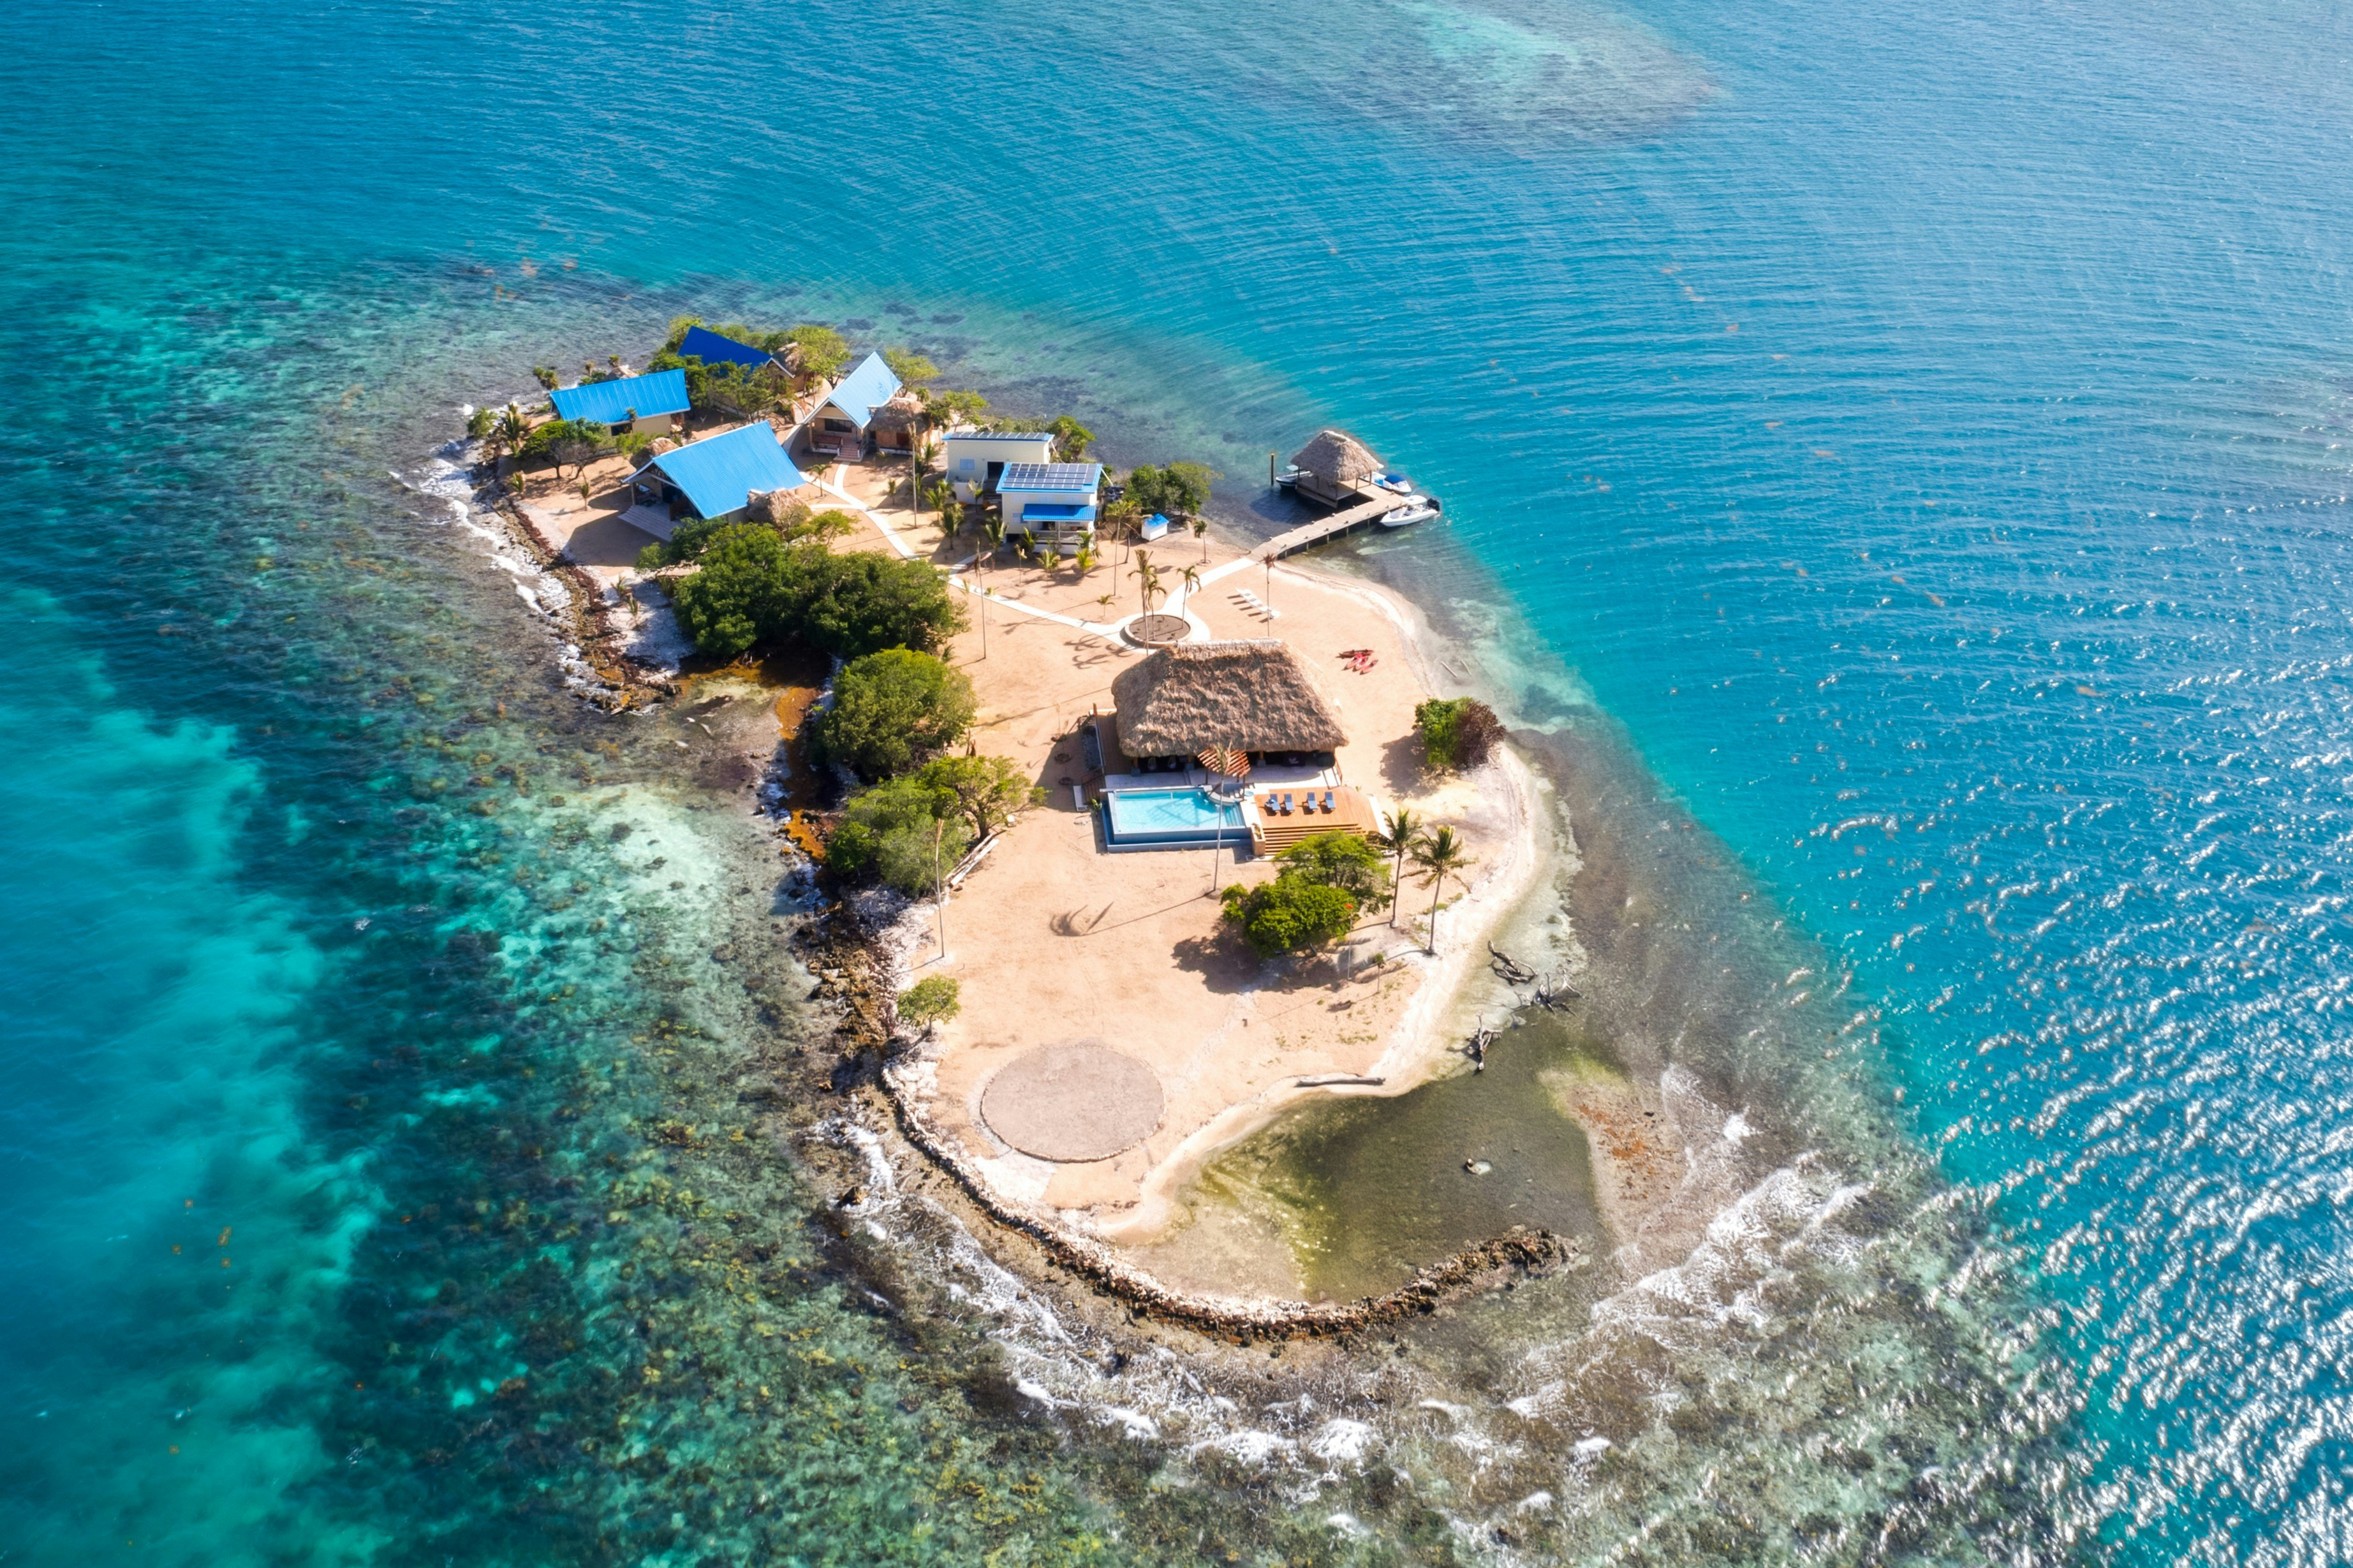 An island off the coast. Вилла на острове Овериондер Кей (Багамские острова, США). Остров Cane Key. Частный остров. Дом на острове.